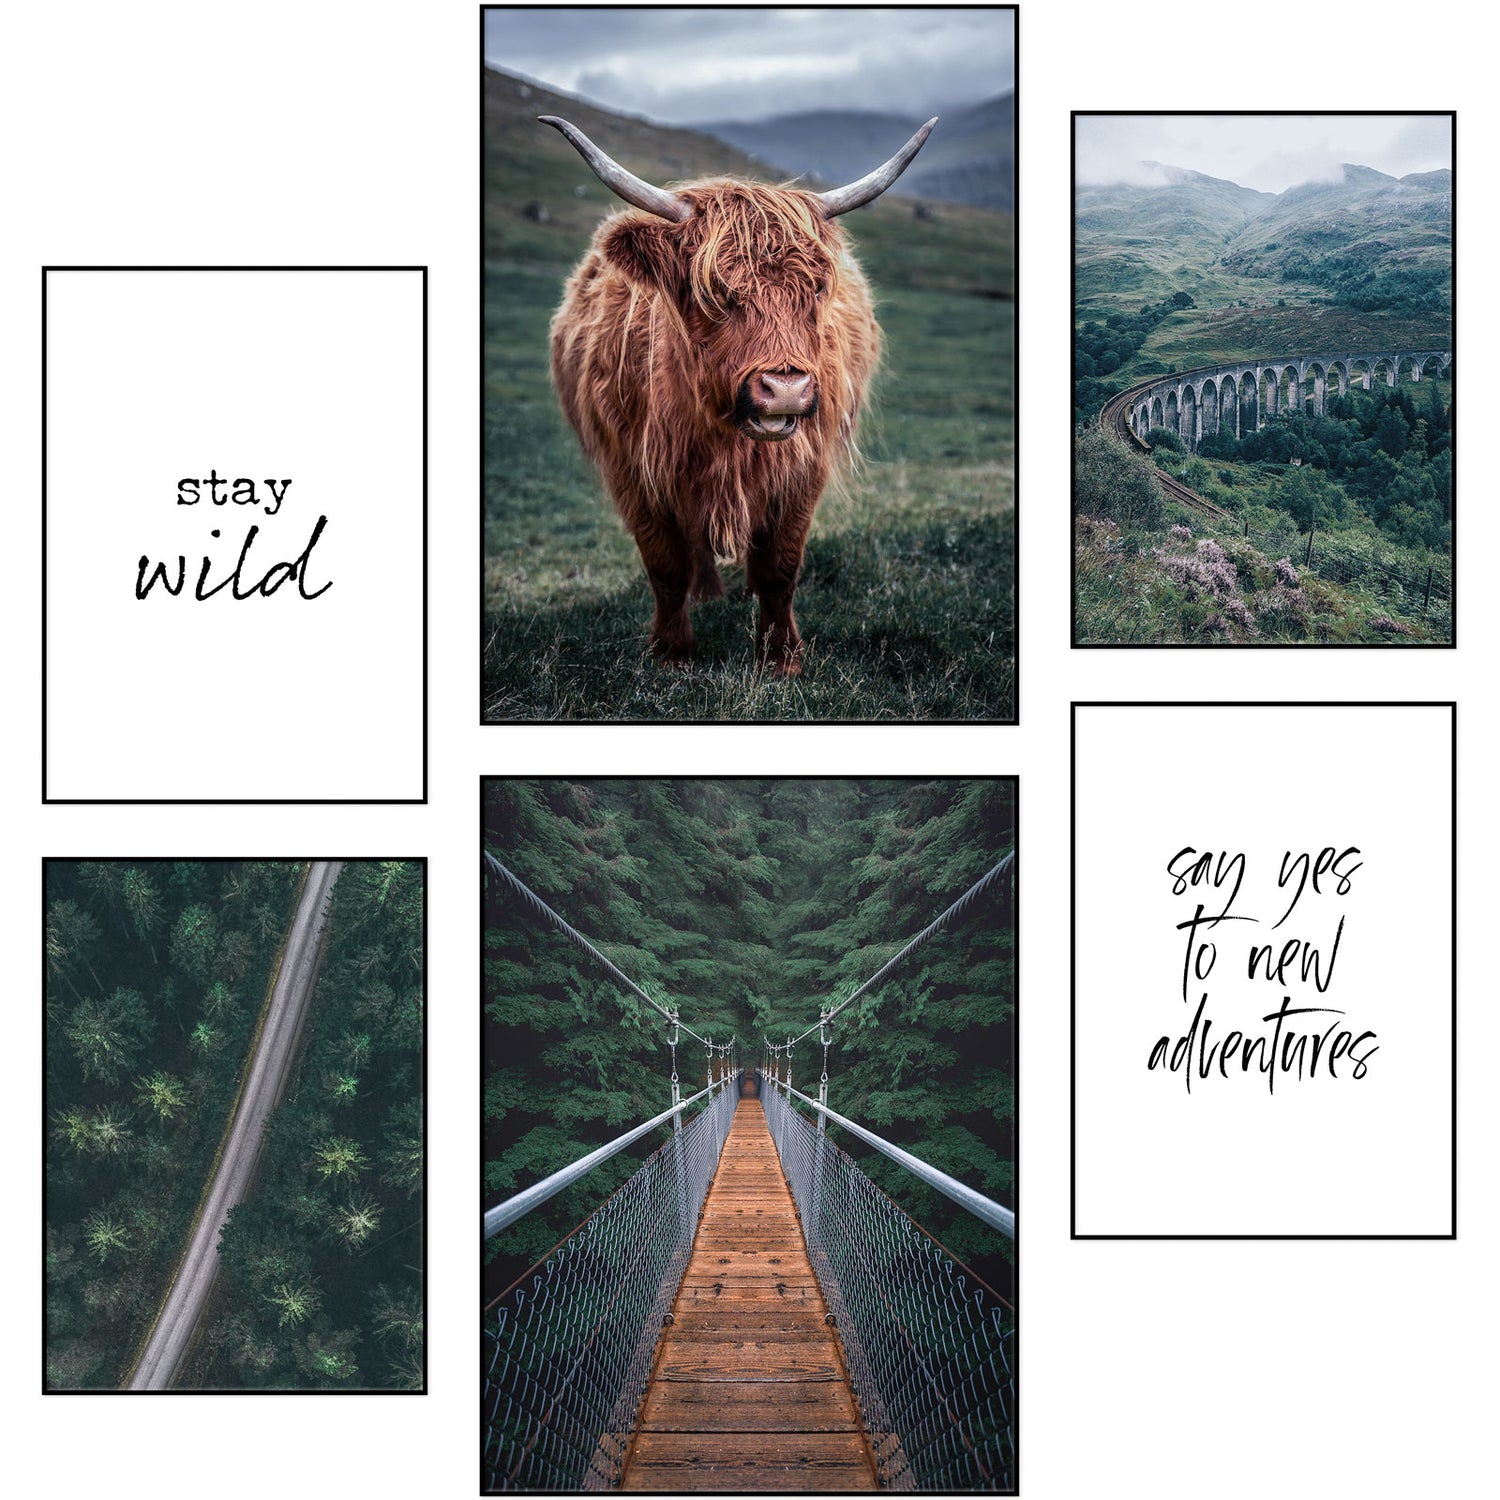 6-teiliges Premium Poster Set "Kuh Schottland Hängebrücke" - Reframed Poster Sets